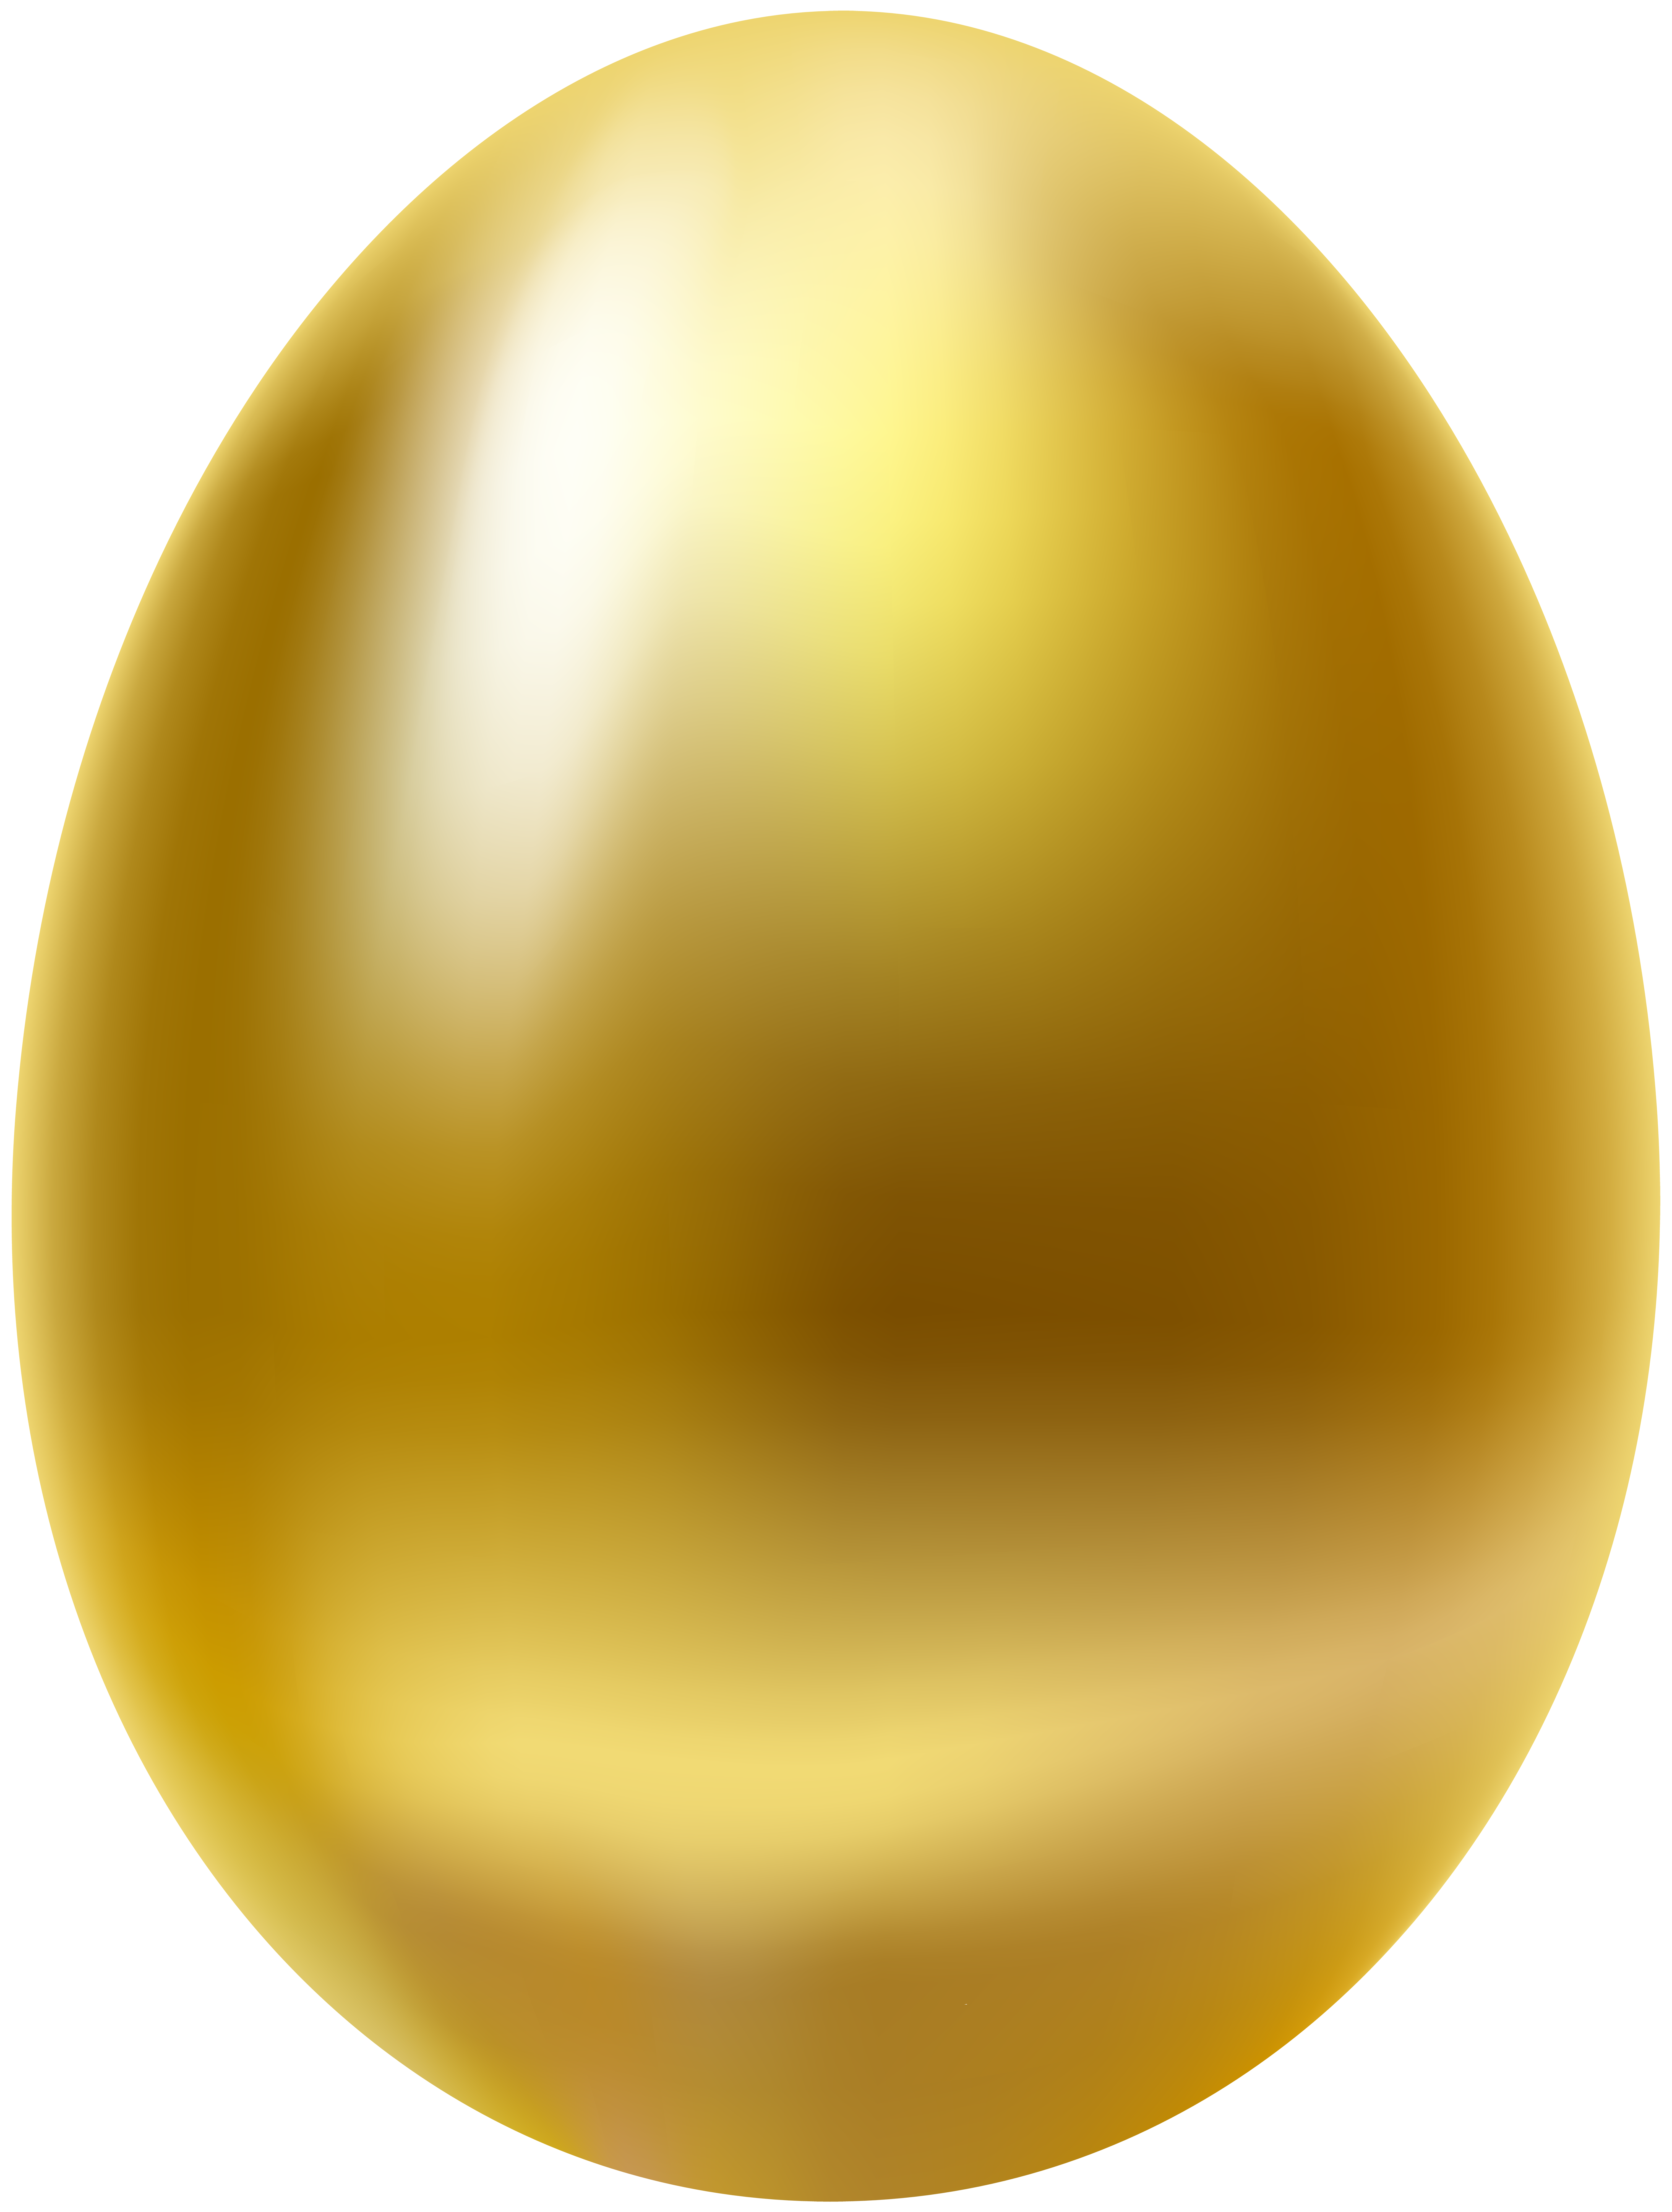 Золотые яйца 2. Золотое яйцо курочки Рябы. Яйцо из сказки Курочка Ряба. Золотое яичко. Яйцо золото.